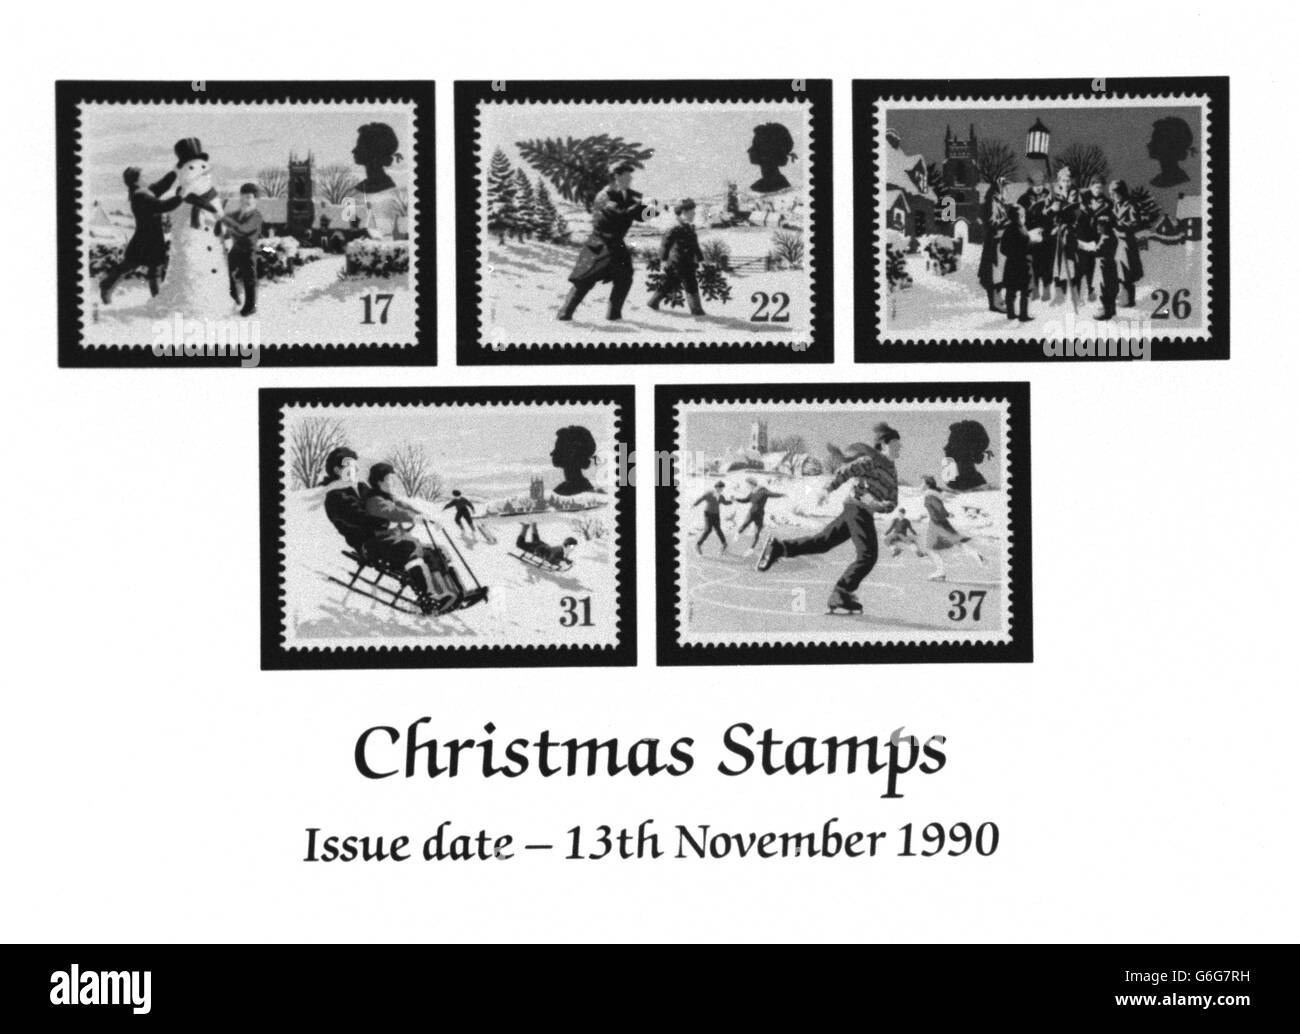 Royal Mail - Bureau de poste timbres de Noël Banque D'Images